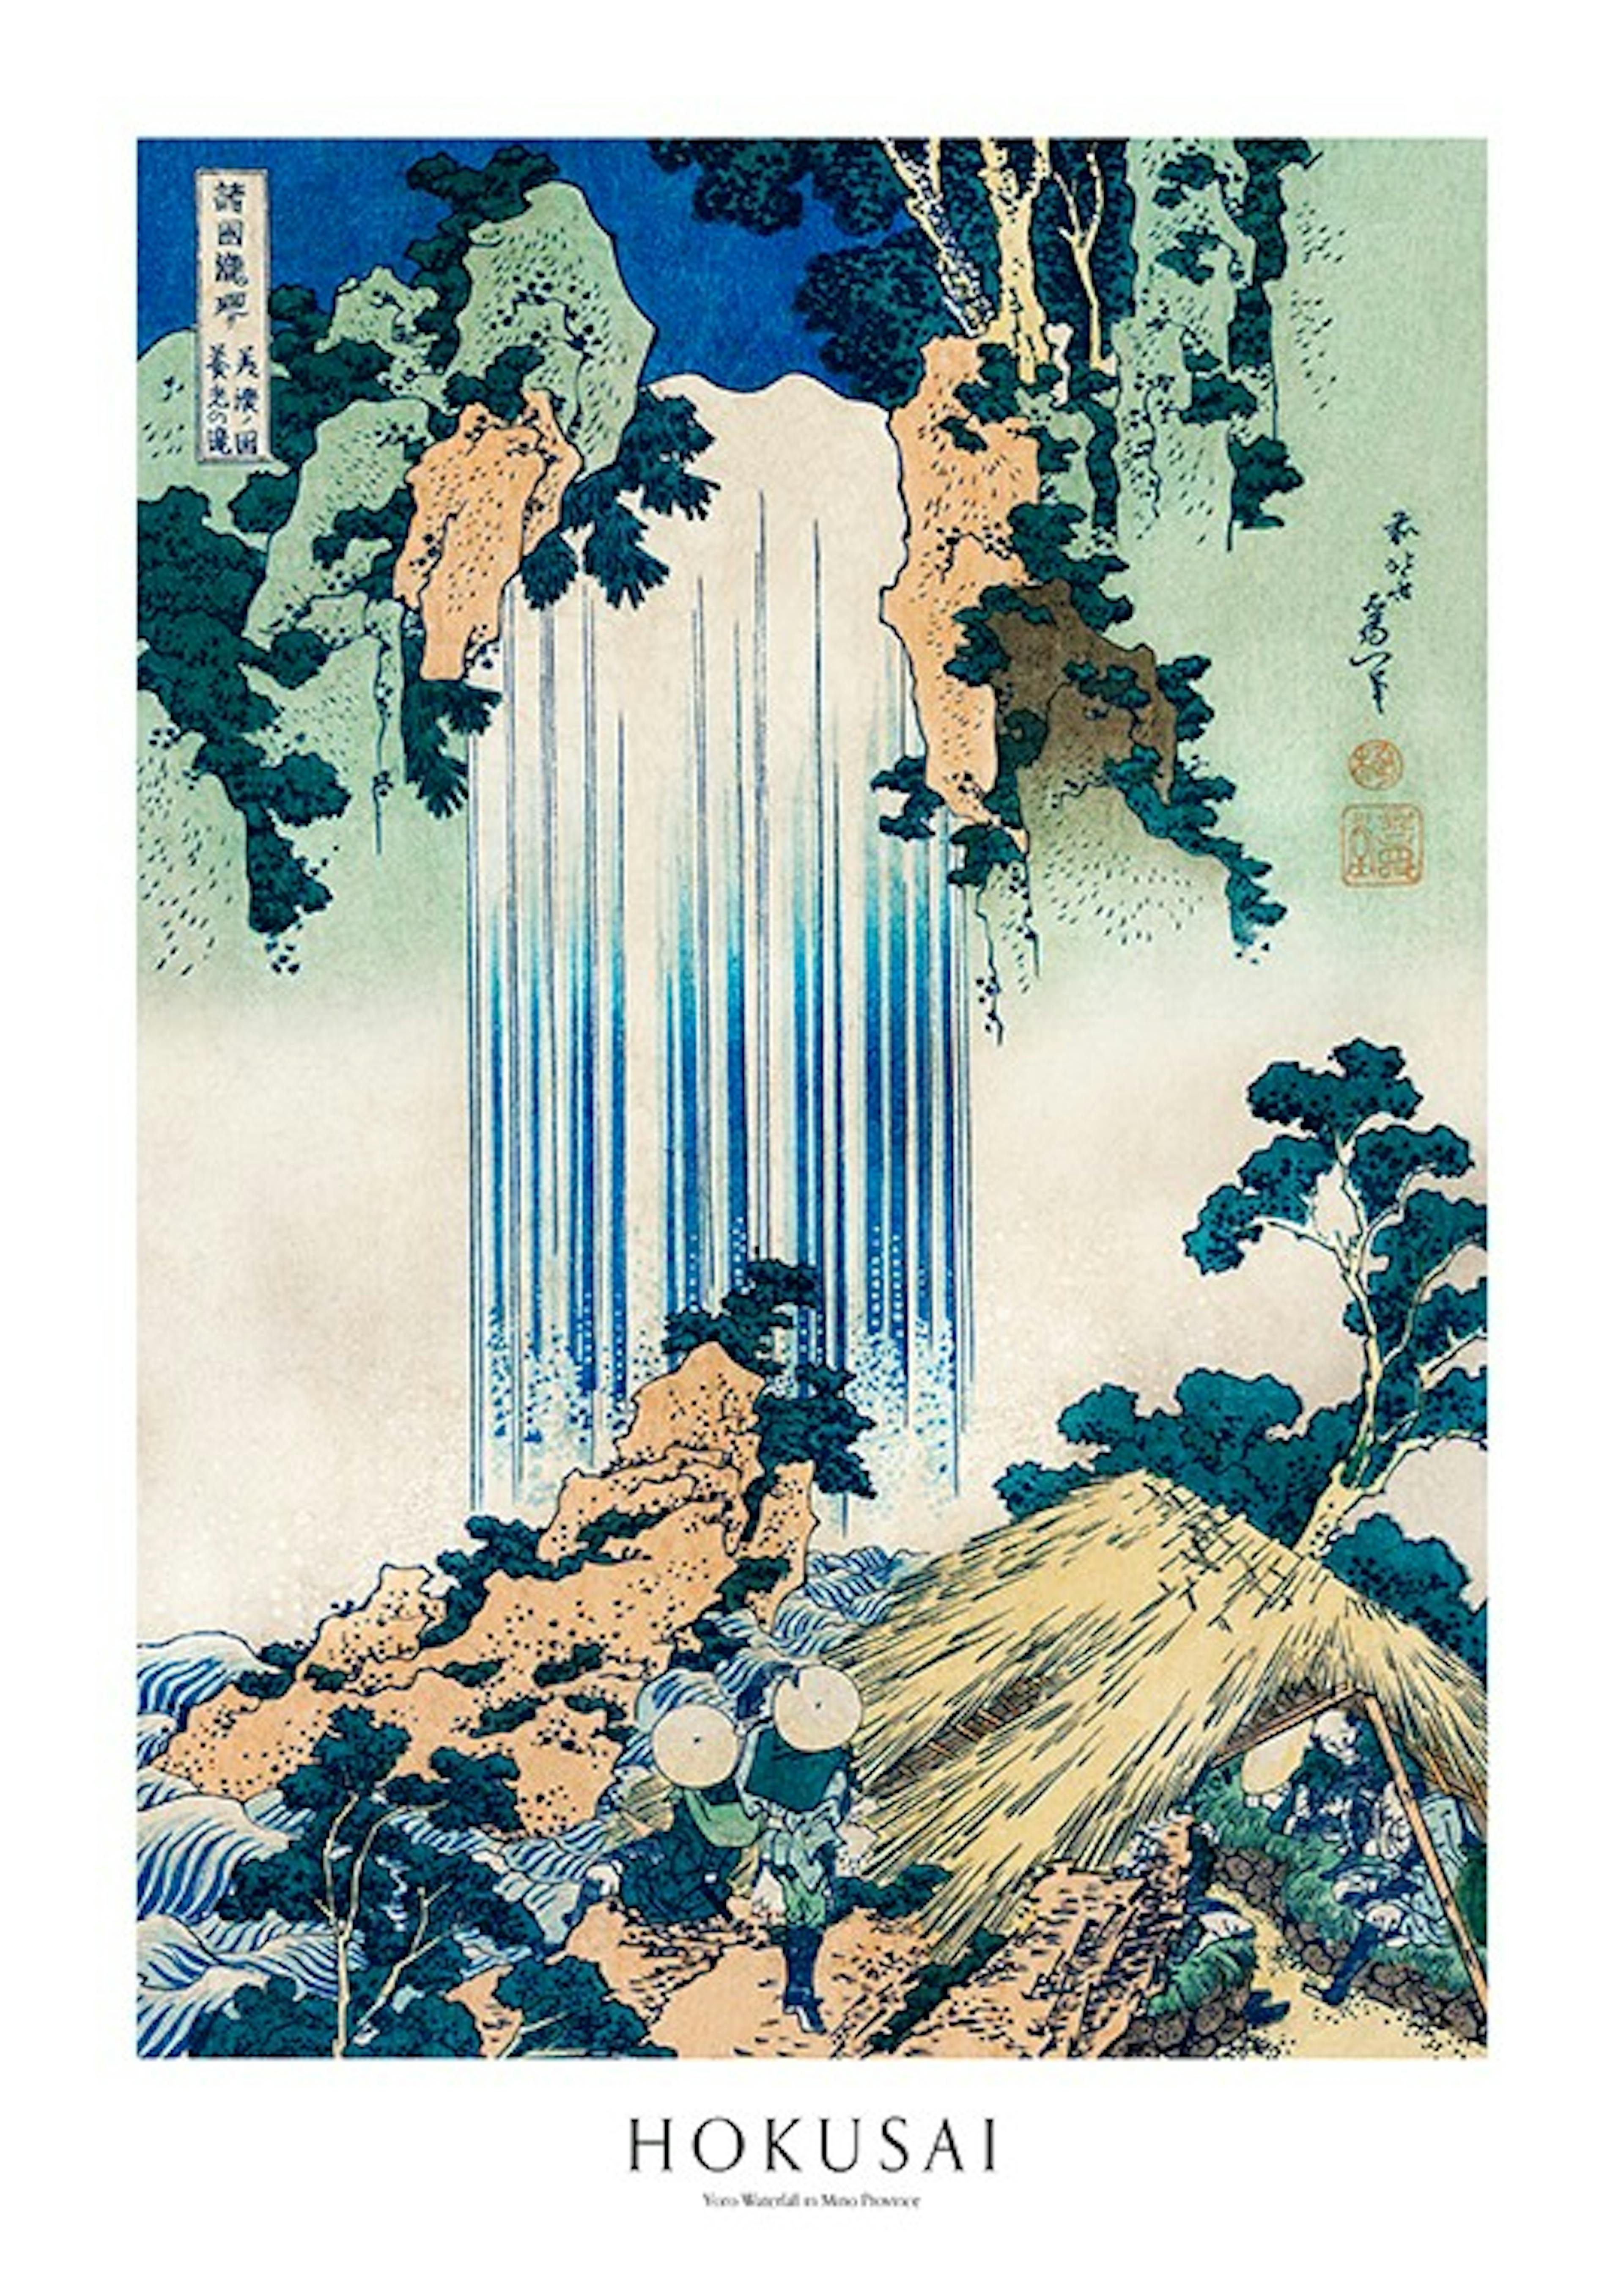 Hokusai - Yoro Waterfall in Mino Province Poster 0